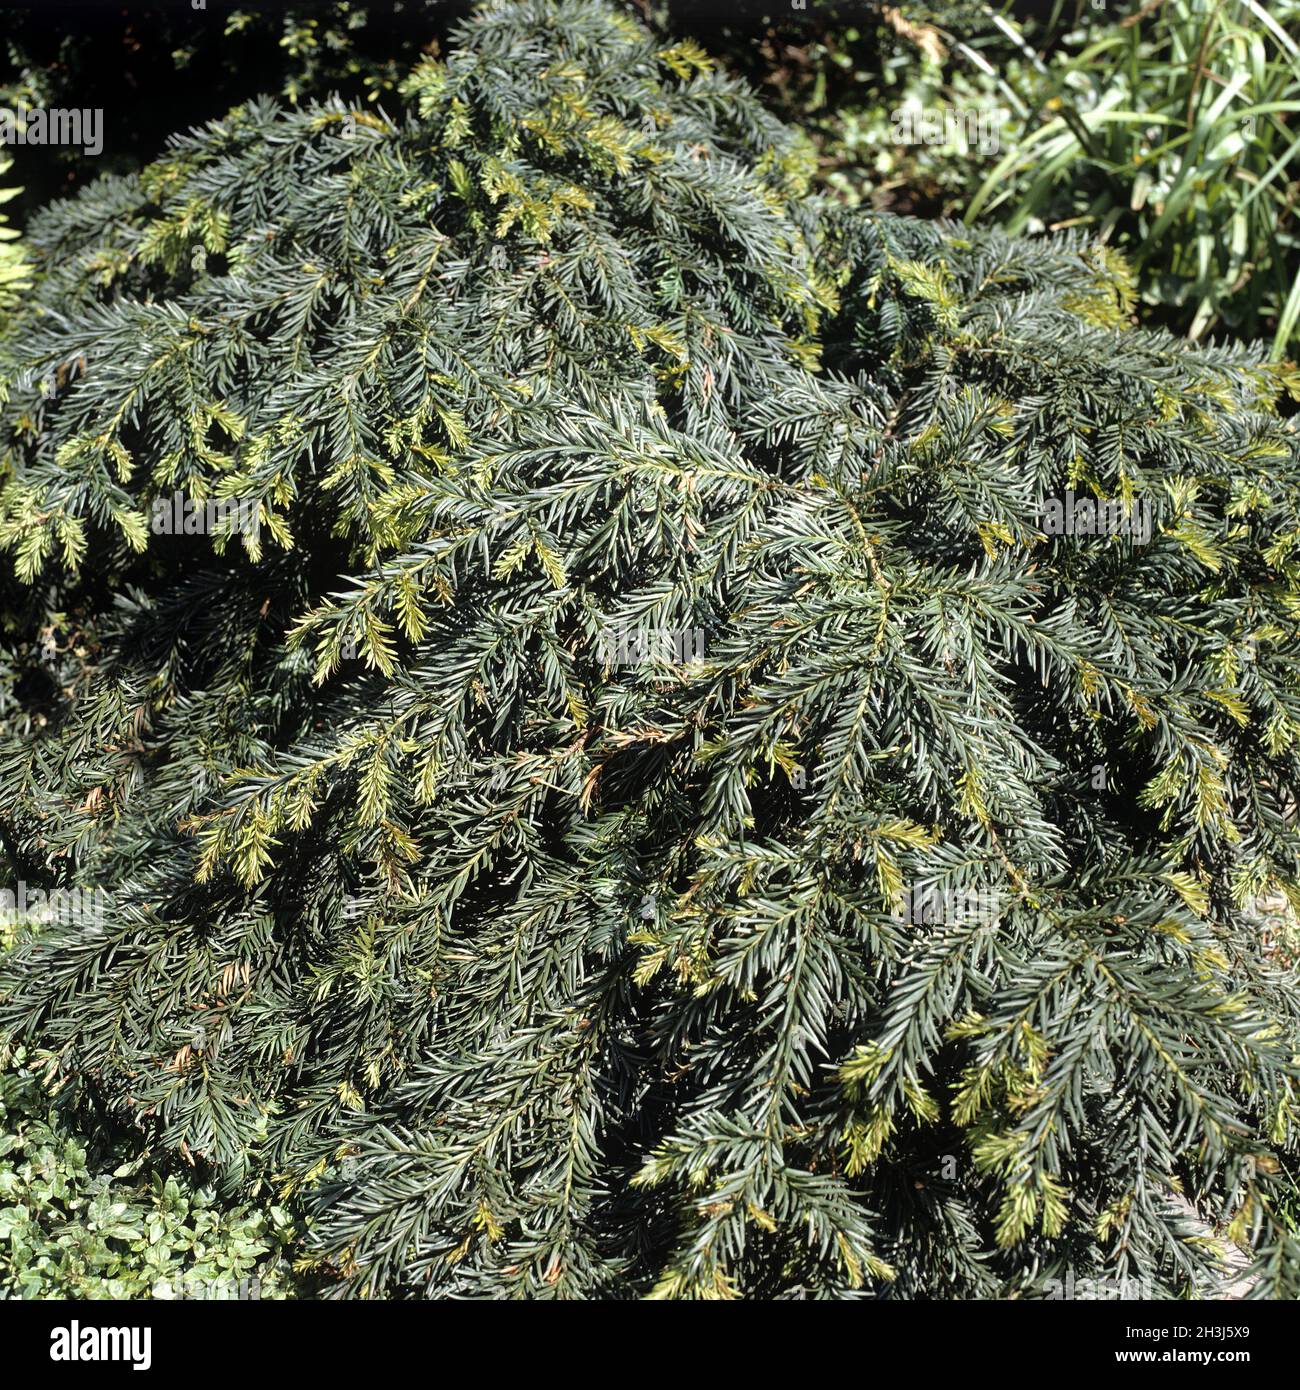 Cushion yew, Yew tree, Taxus baccata, Repandens Stock Photo